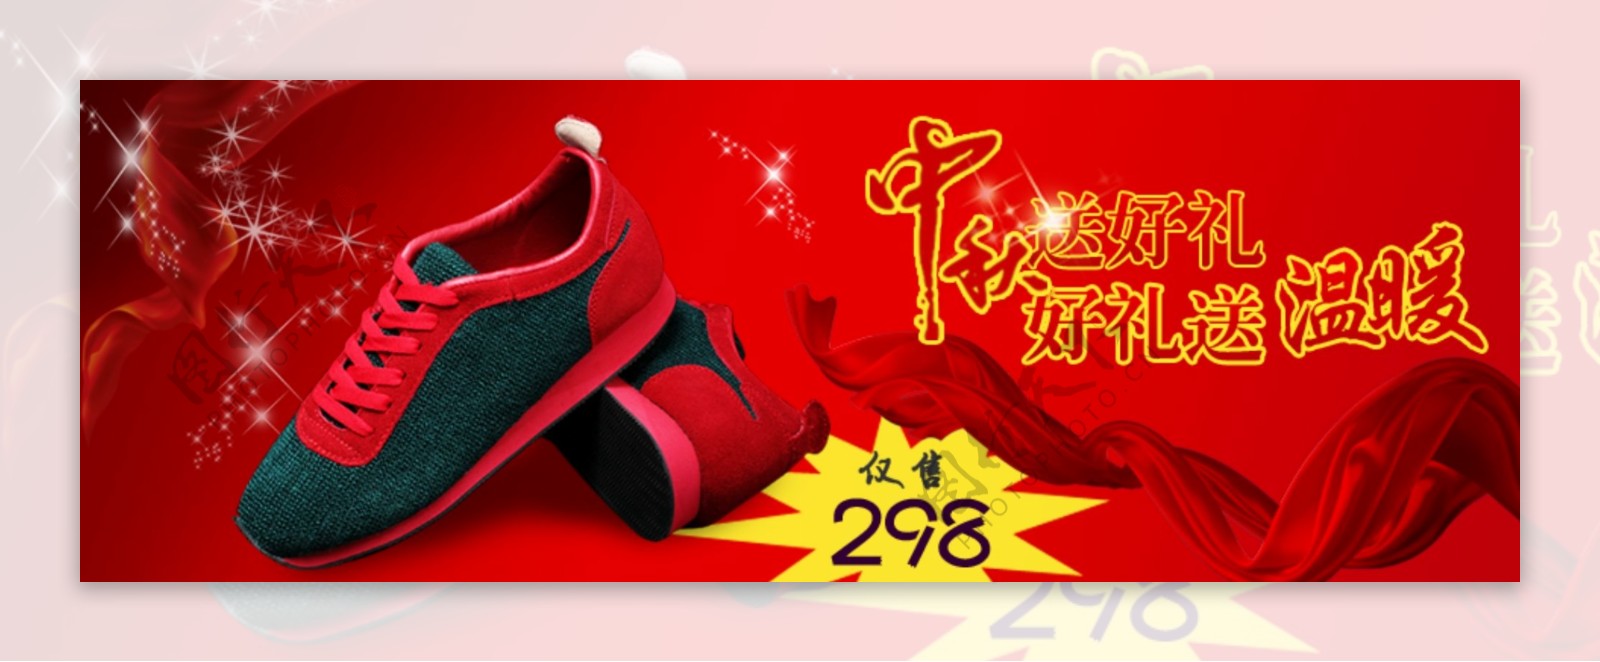 红色运动鞋子促销图淘宝海报原创